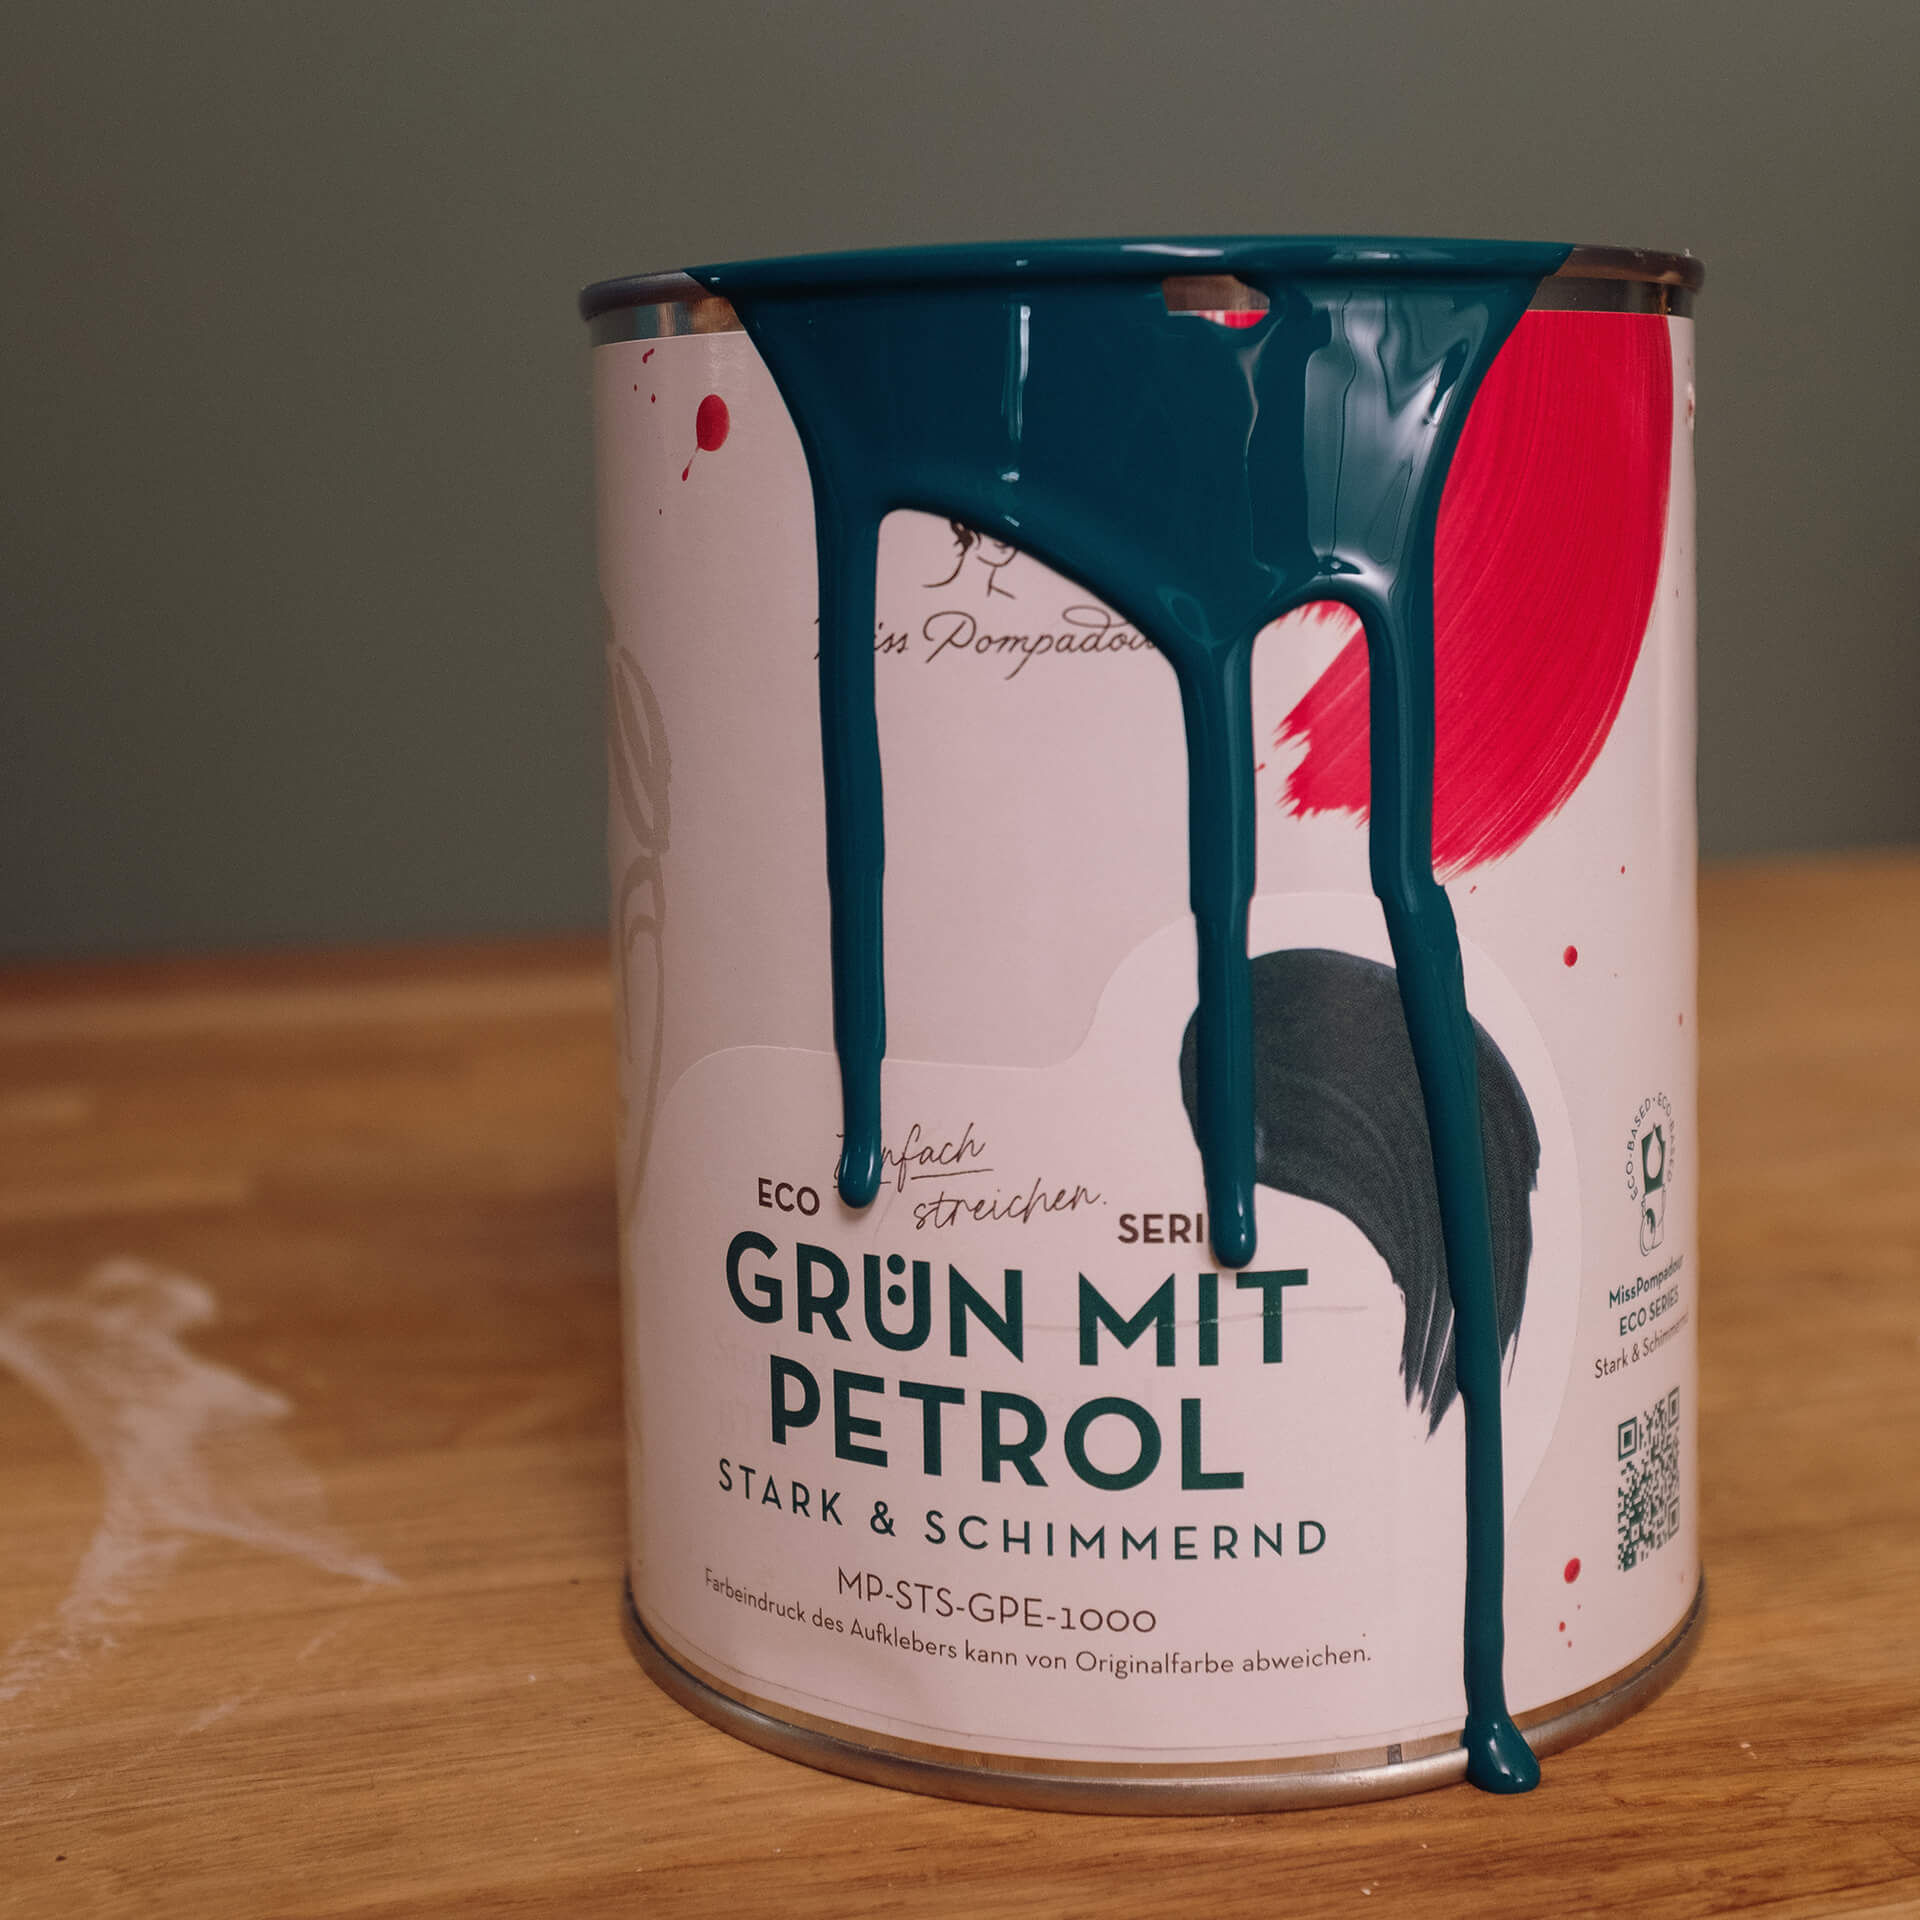 MissPompadour Grün mit Petrol - Sanft & Matt 1L